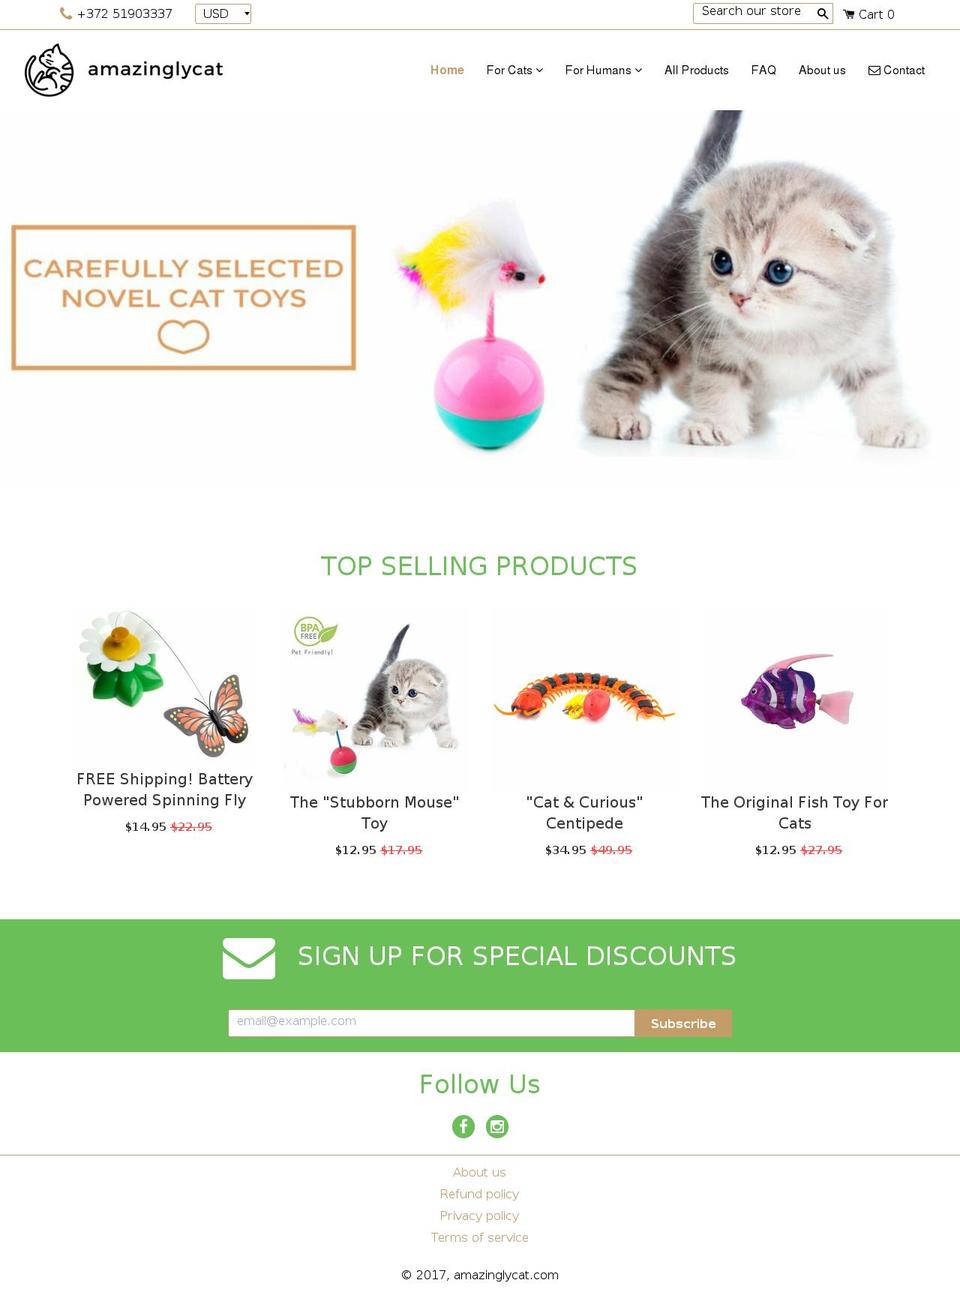 amazinglycat.com shopify website screenshot